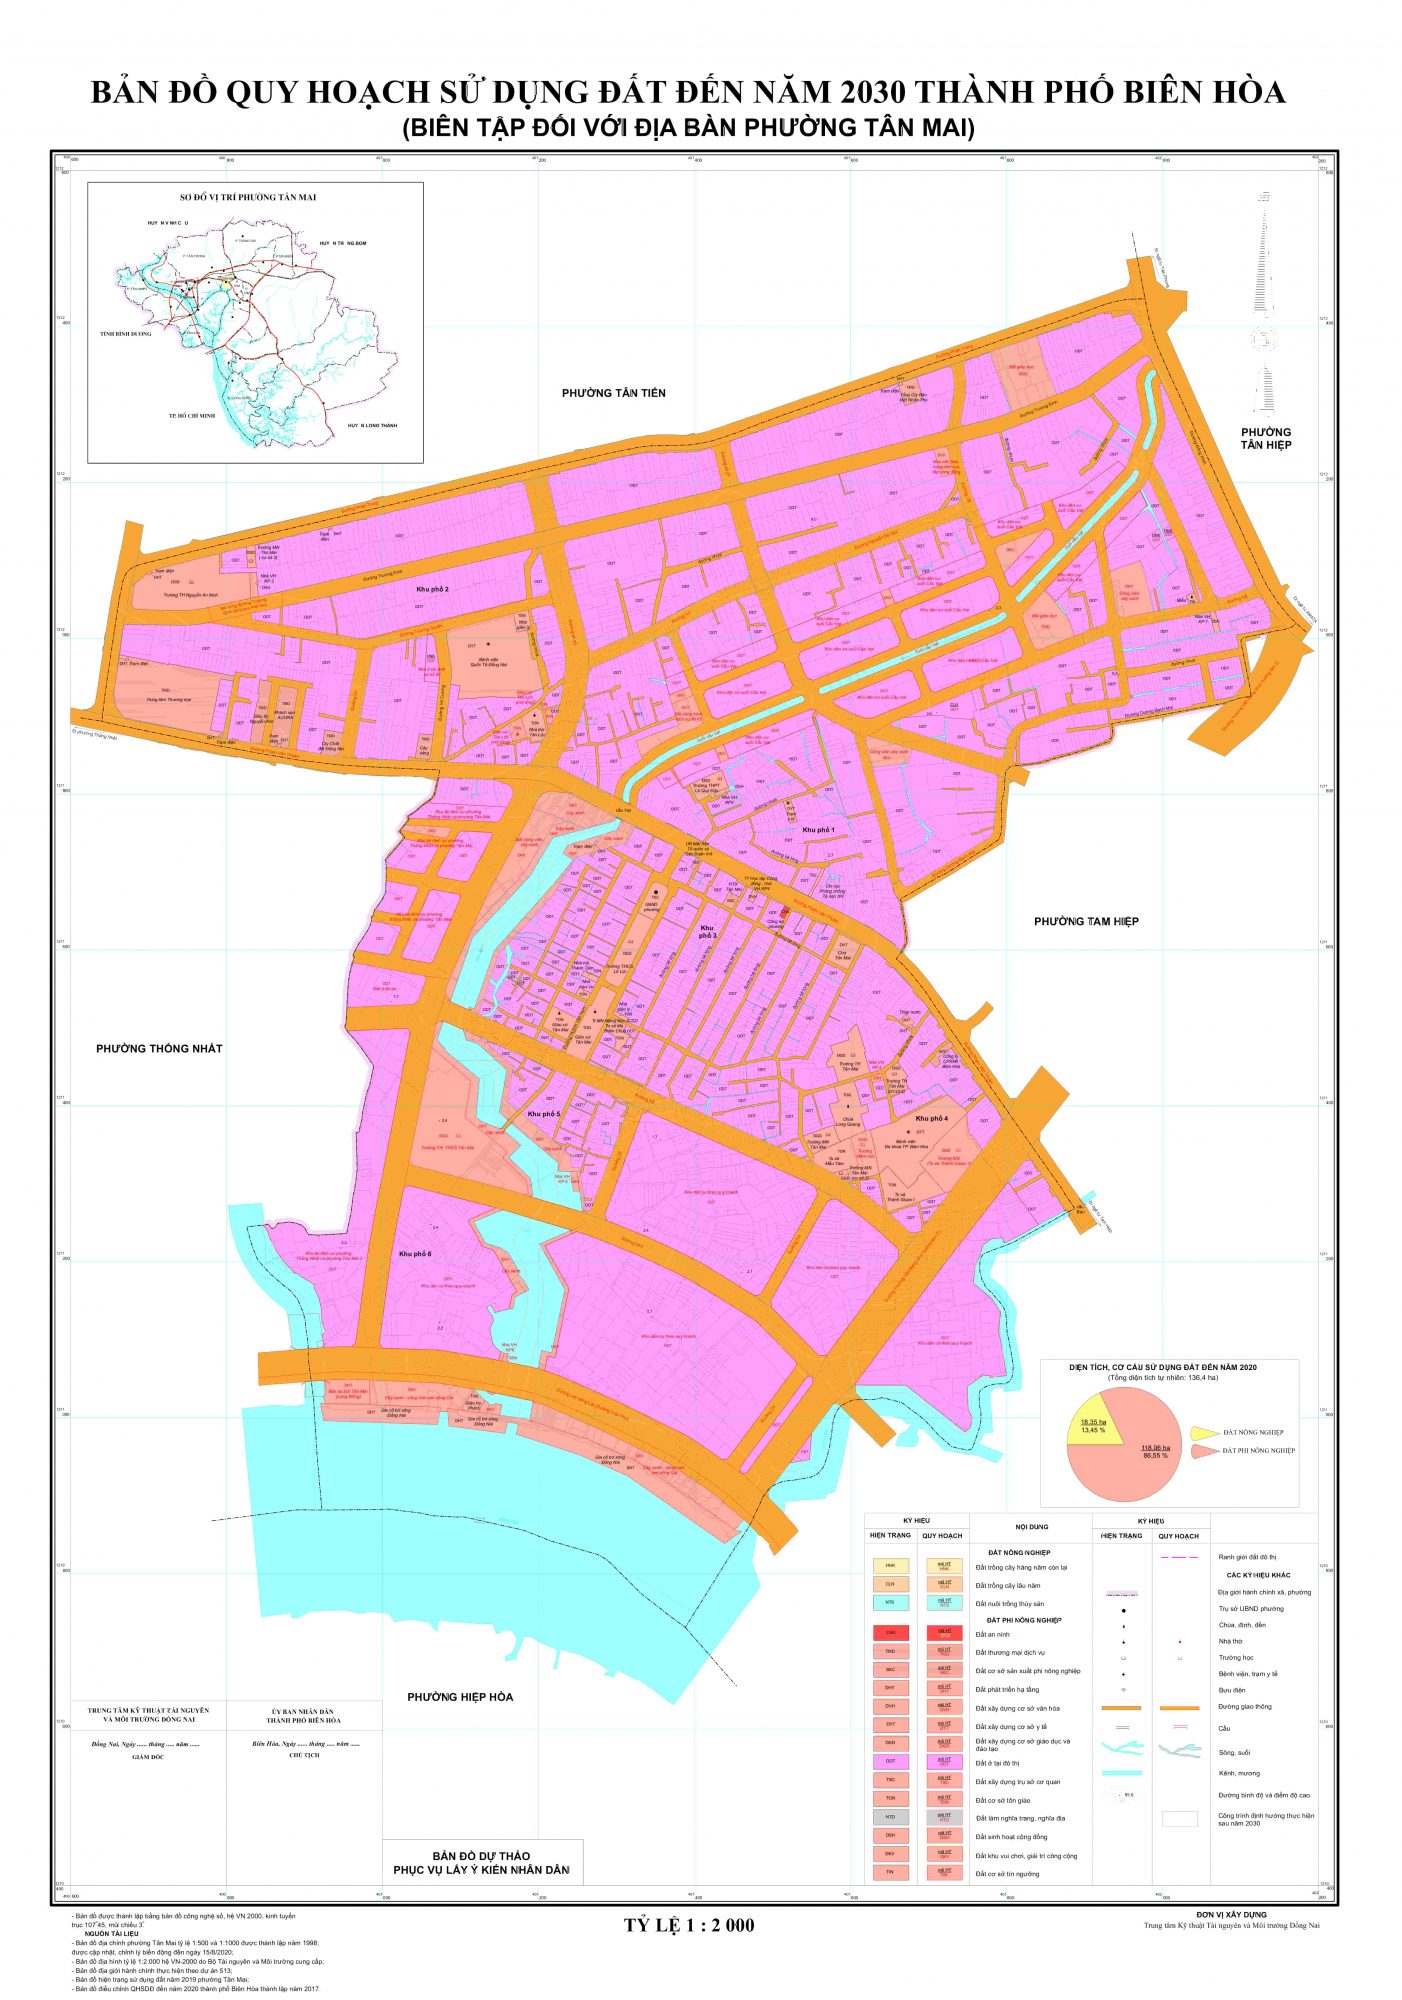 Bản đồ quy hoạch phường Tân Mai, thành phố Biên Hòa, tỉnh Đồng Nai đến năm 2030